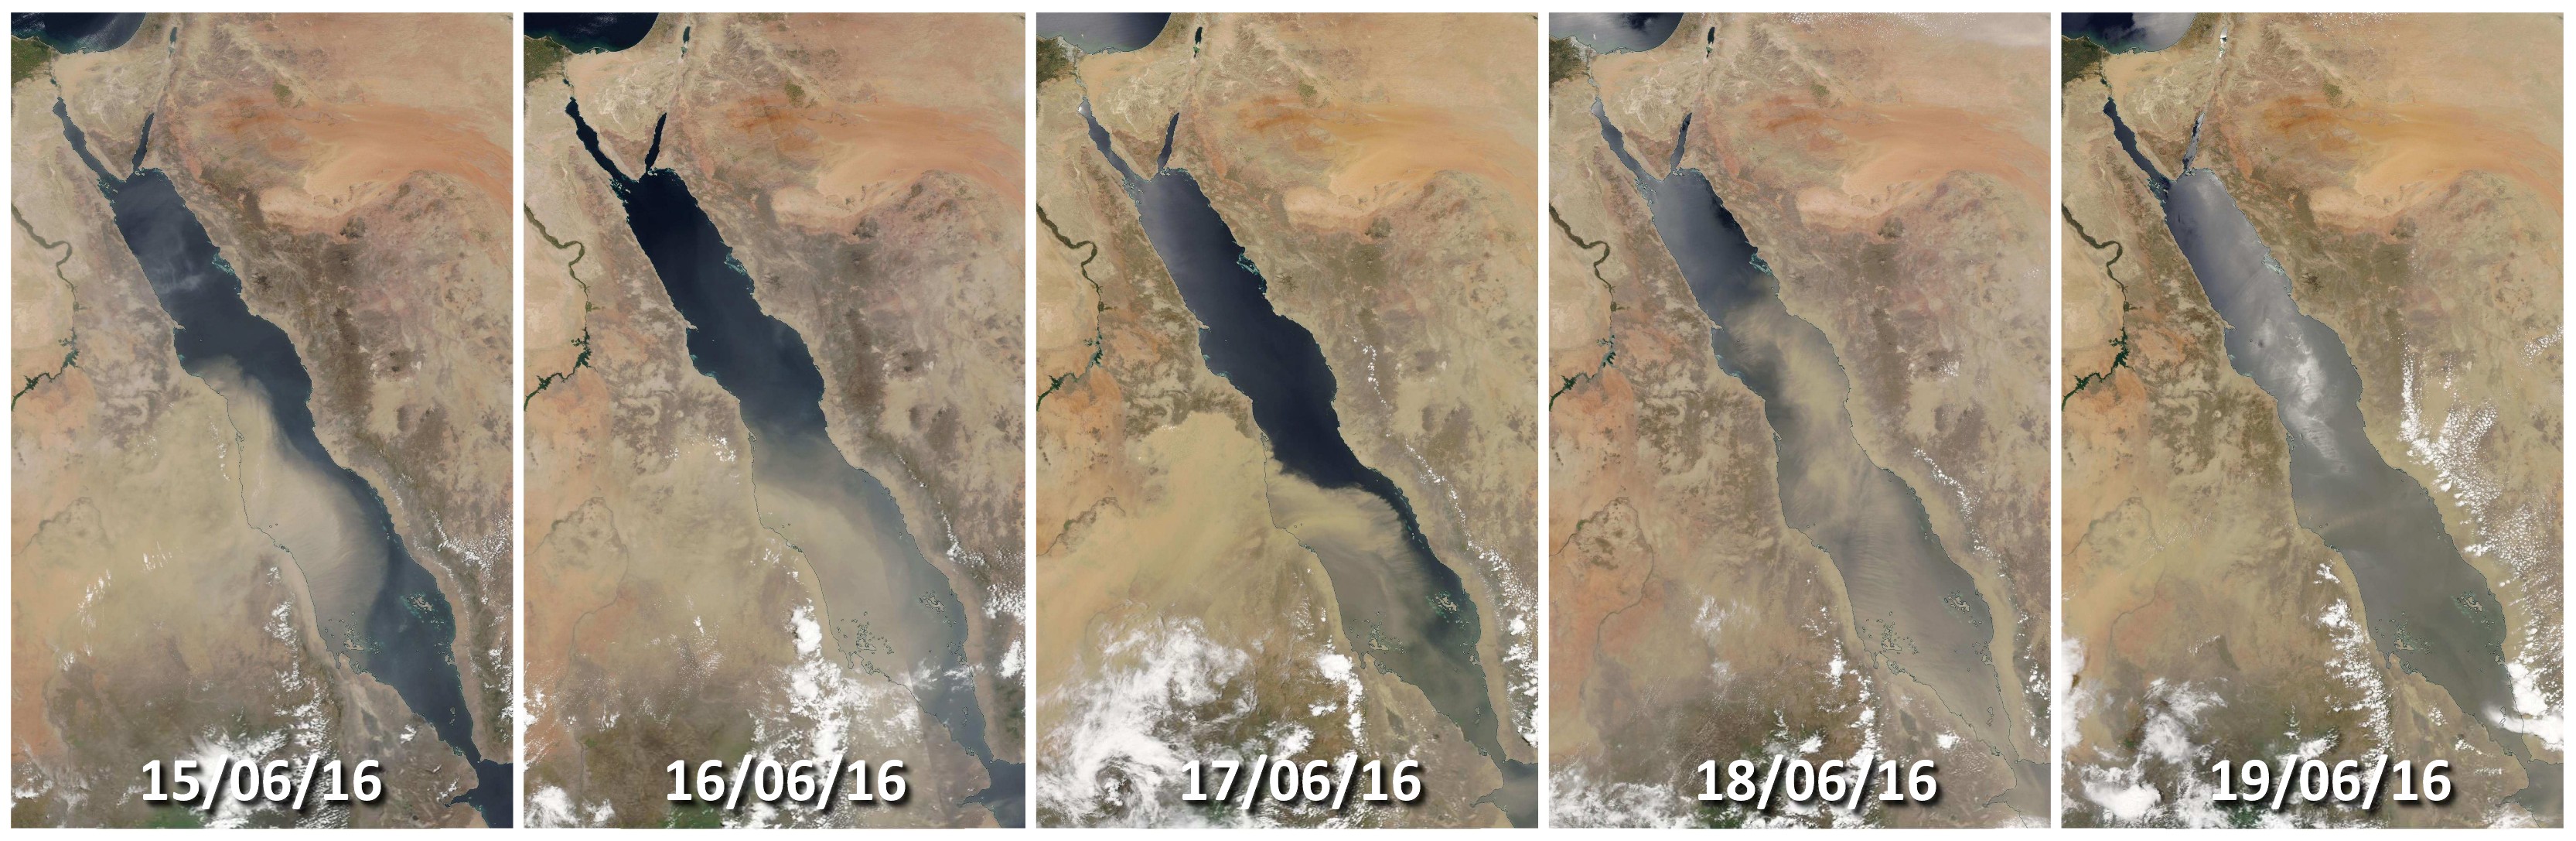 Suomi NPP - Tempête de sable - Nuages de sable - Mer rouge - Sand - Egypte - NASA - Marchand de sable